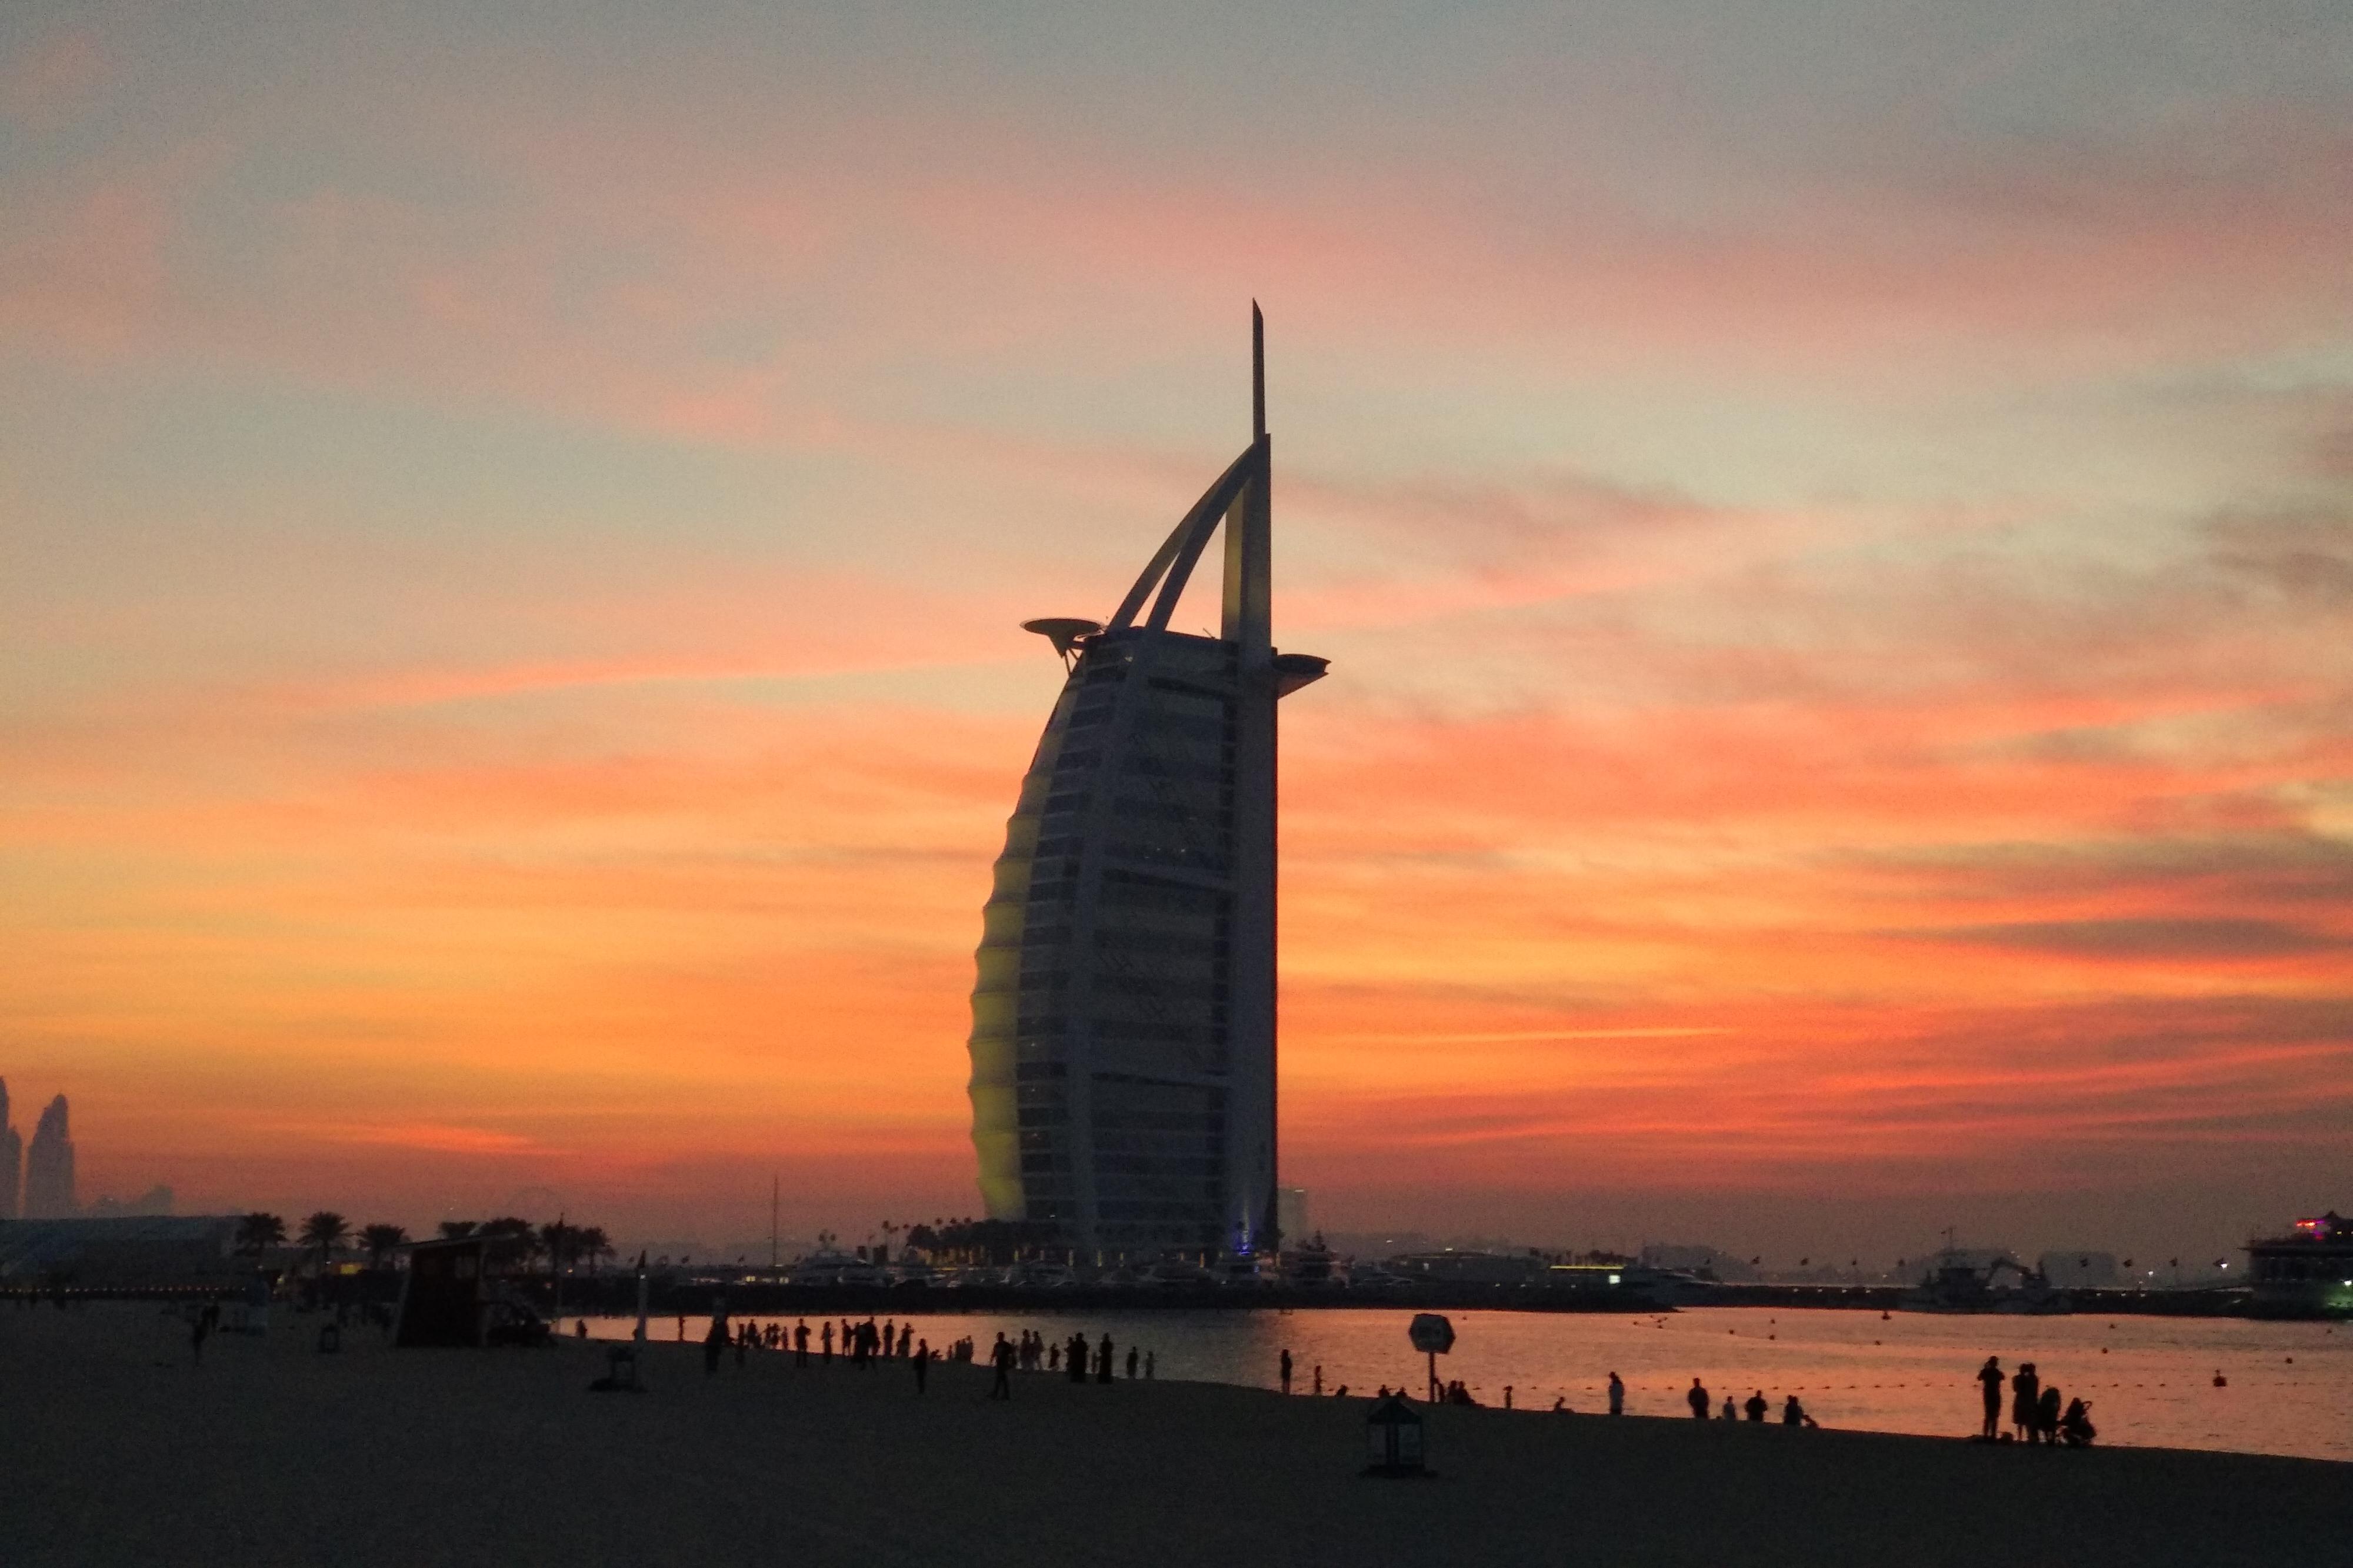 迪拜自由行必玩热门旅游景点与一日游行程、景点门票、交通票券 - Klook客路 中国